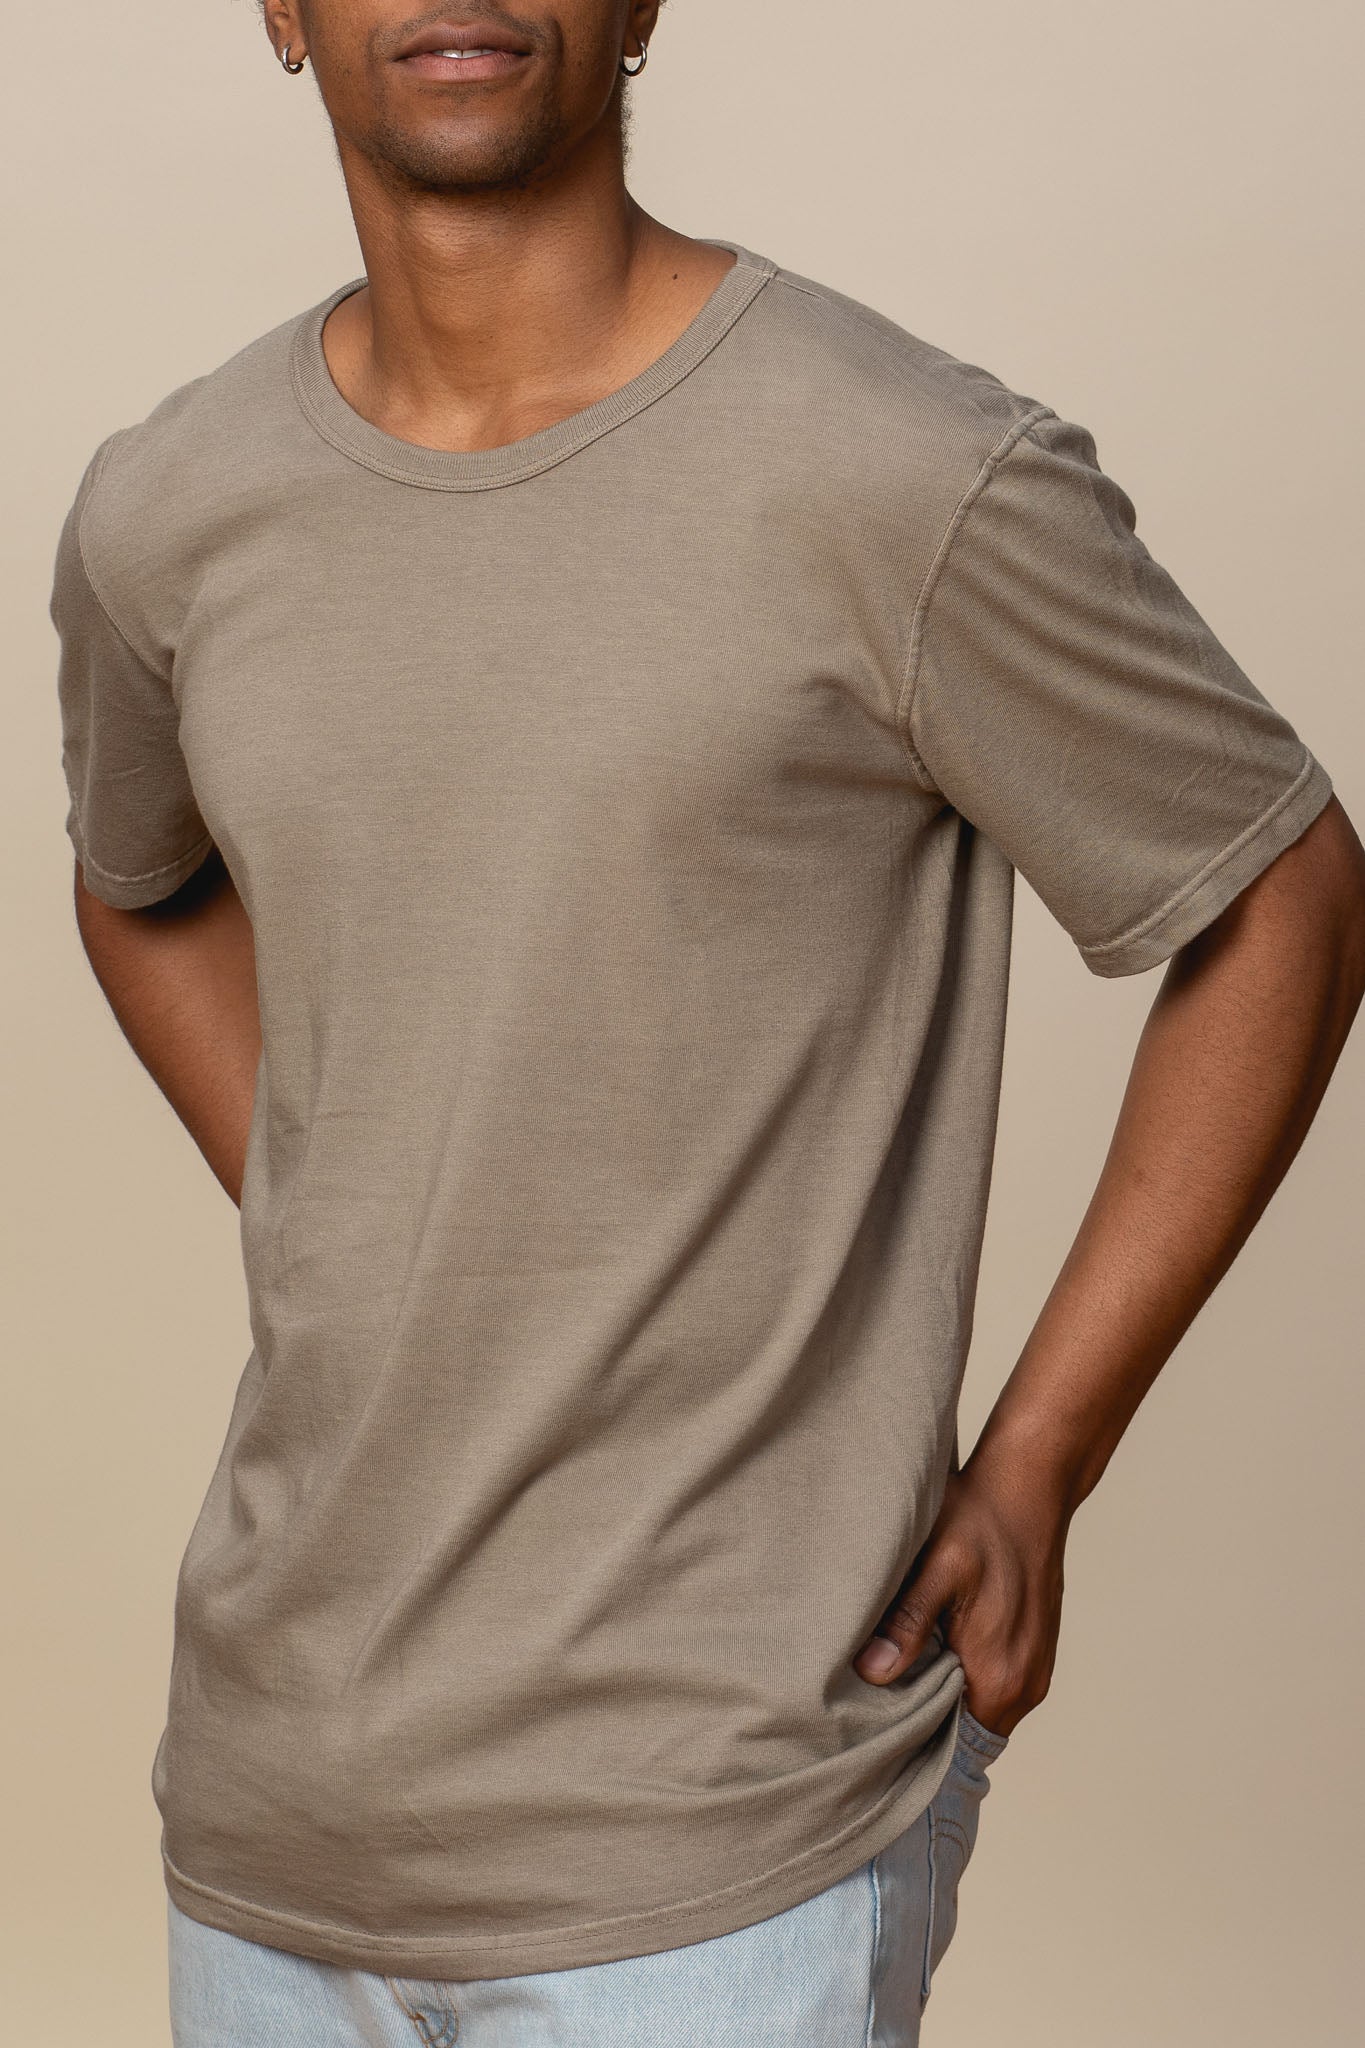 Adult Short Sleeve Hemp T Shirt Made in USA Goodwear USA